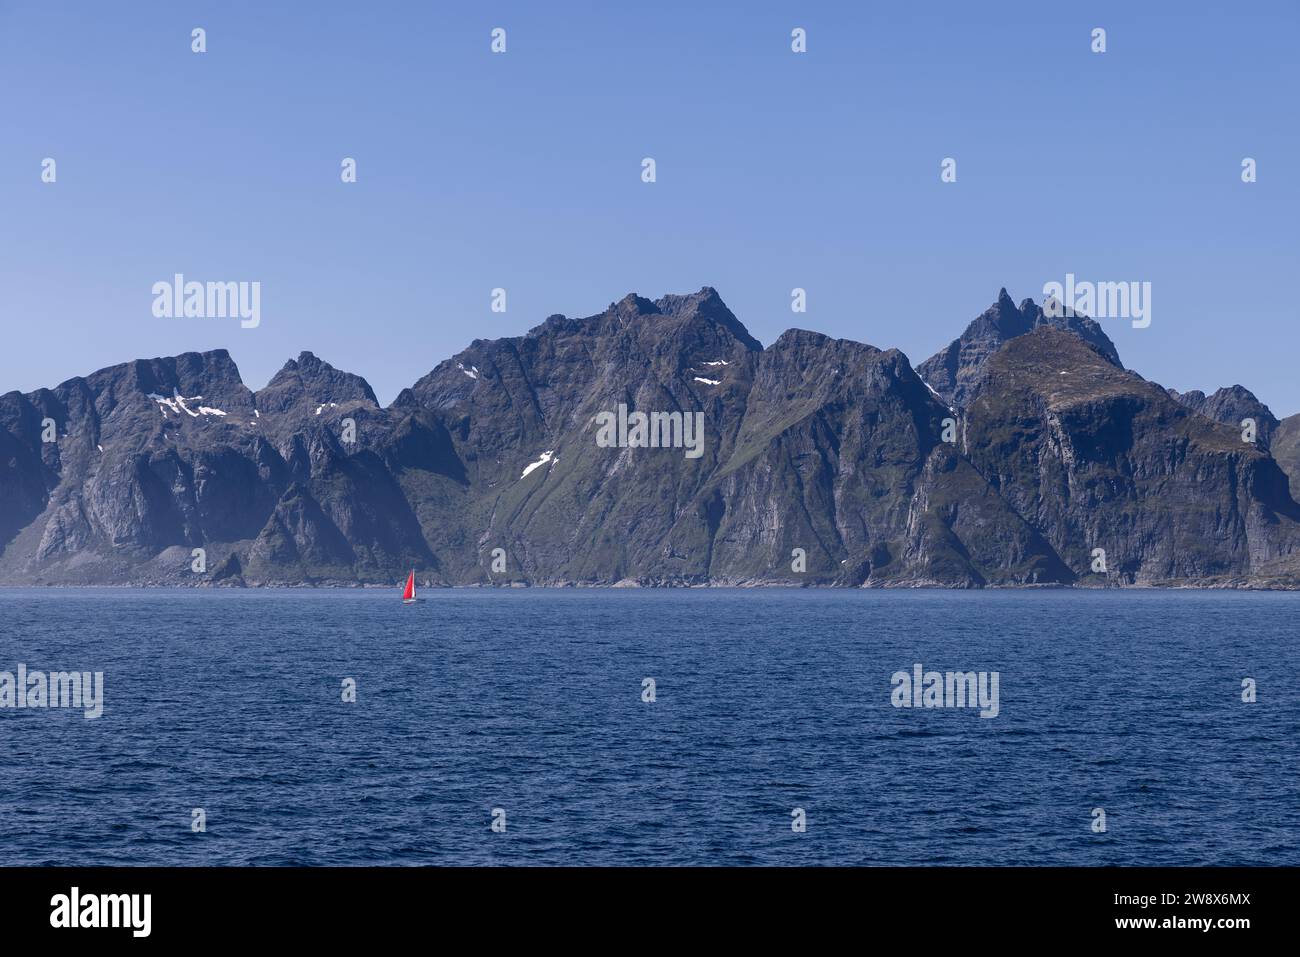 Ein malerischer Blick auf die Nordsee und einen Bergkamm, der über ruhigem Wasser thront, mit einem Segelboot mit rotem Segel nahe der Insel Lofoten, unter einem bl Stockfoto